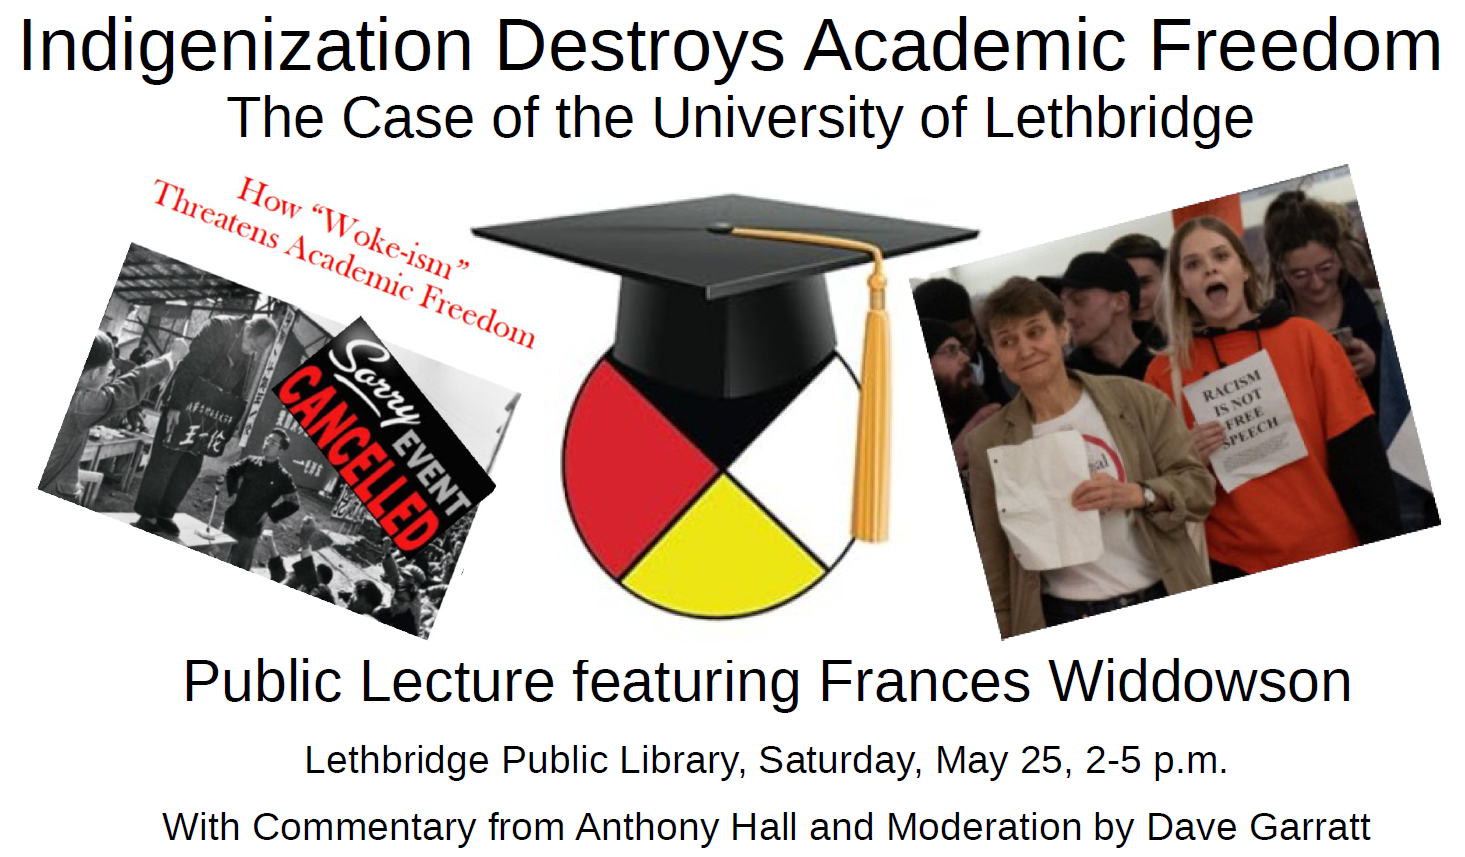 Frances Widdowson’s Presentation “Indigenization Destroys Academic Freedom”